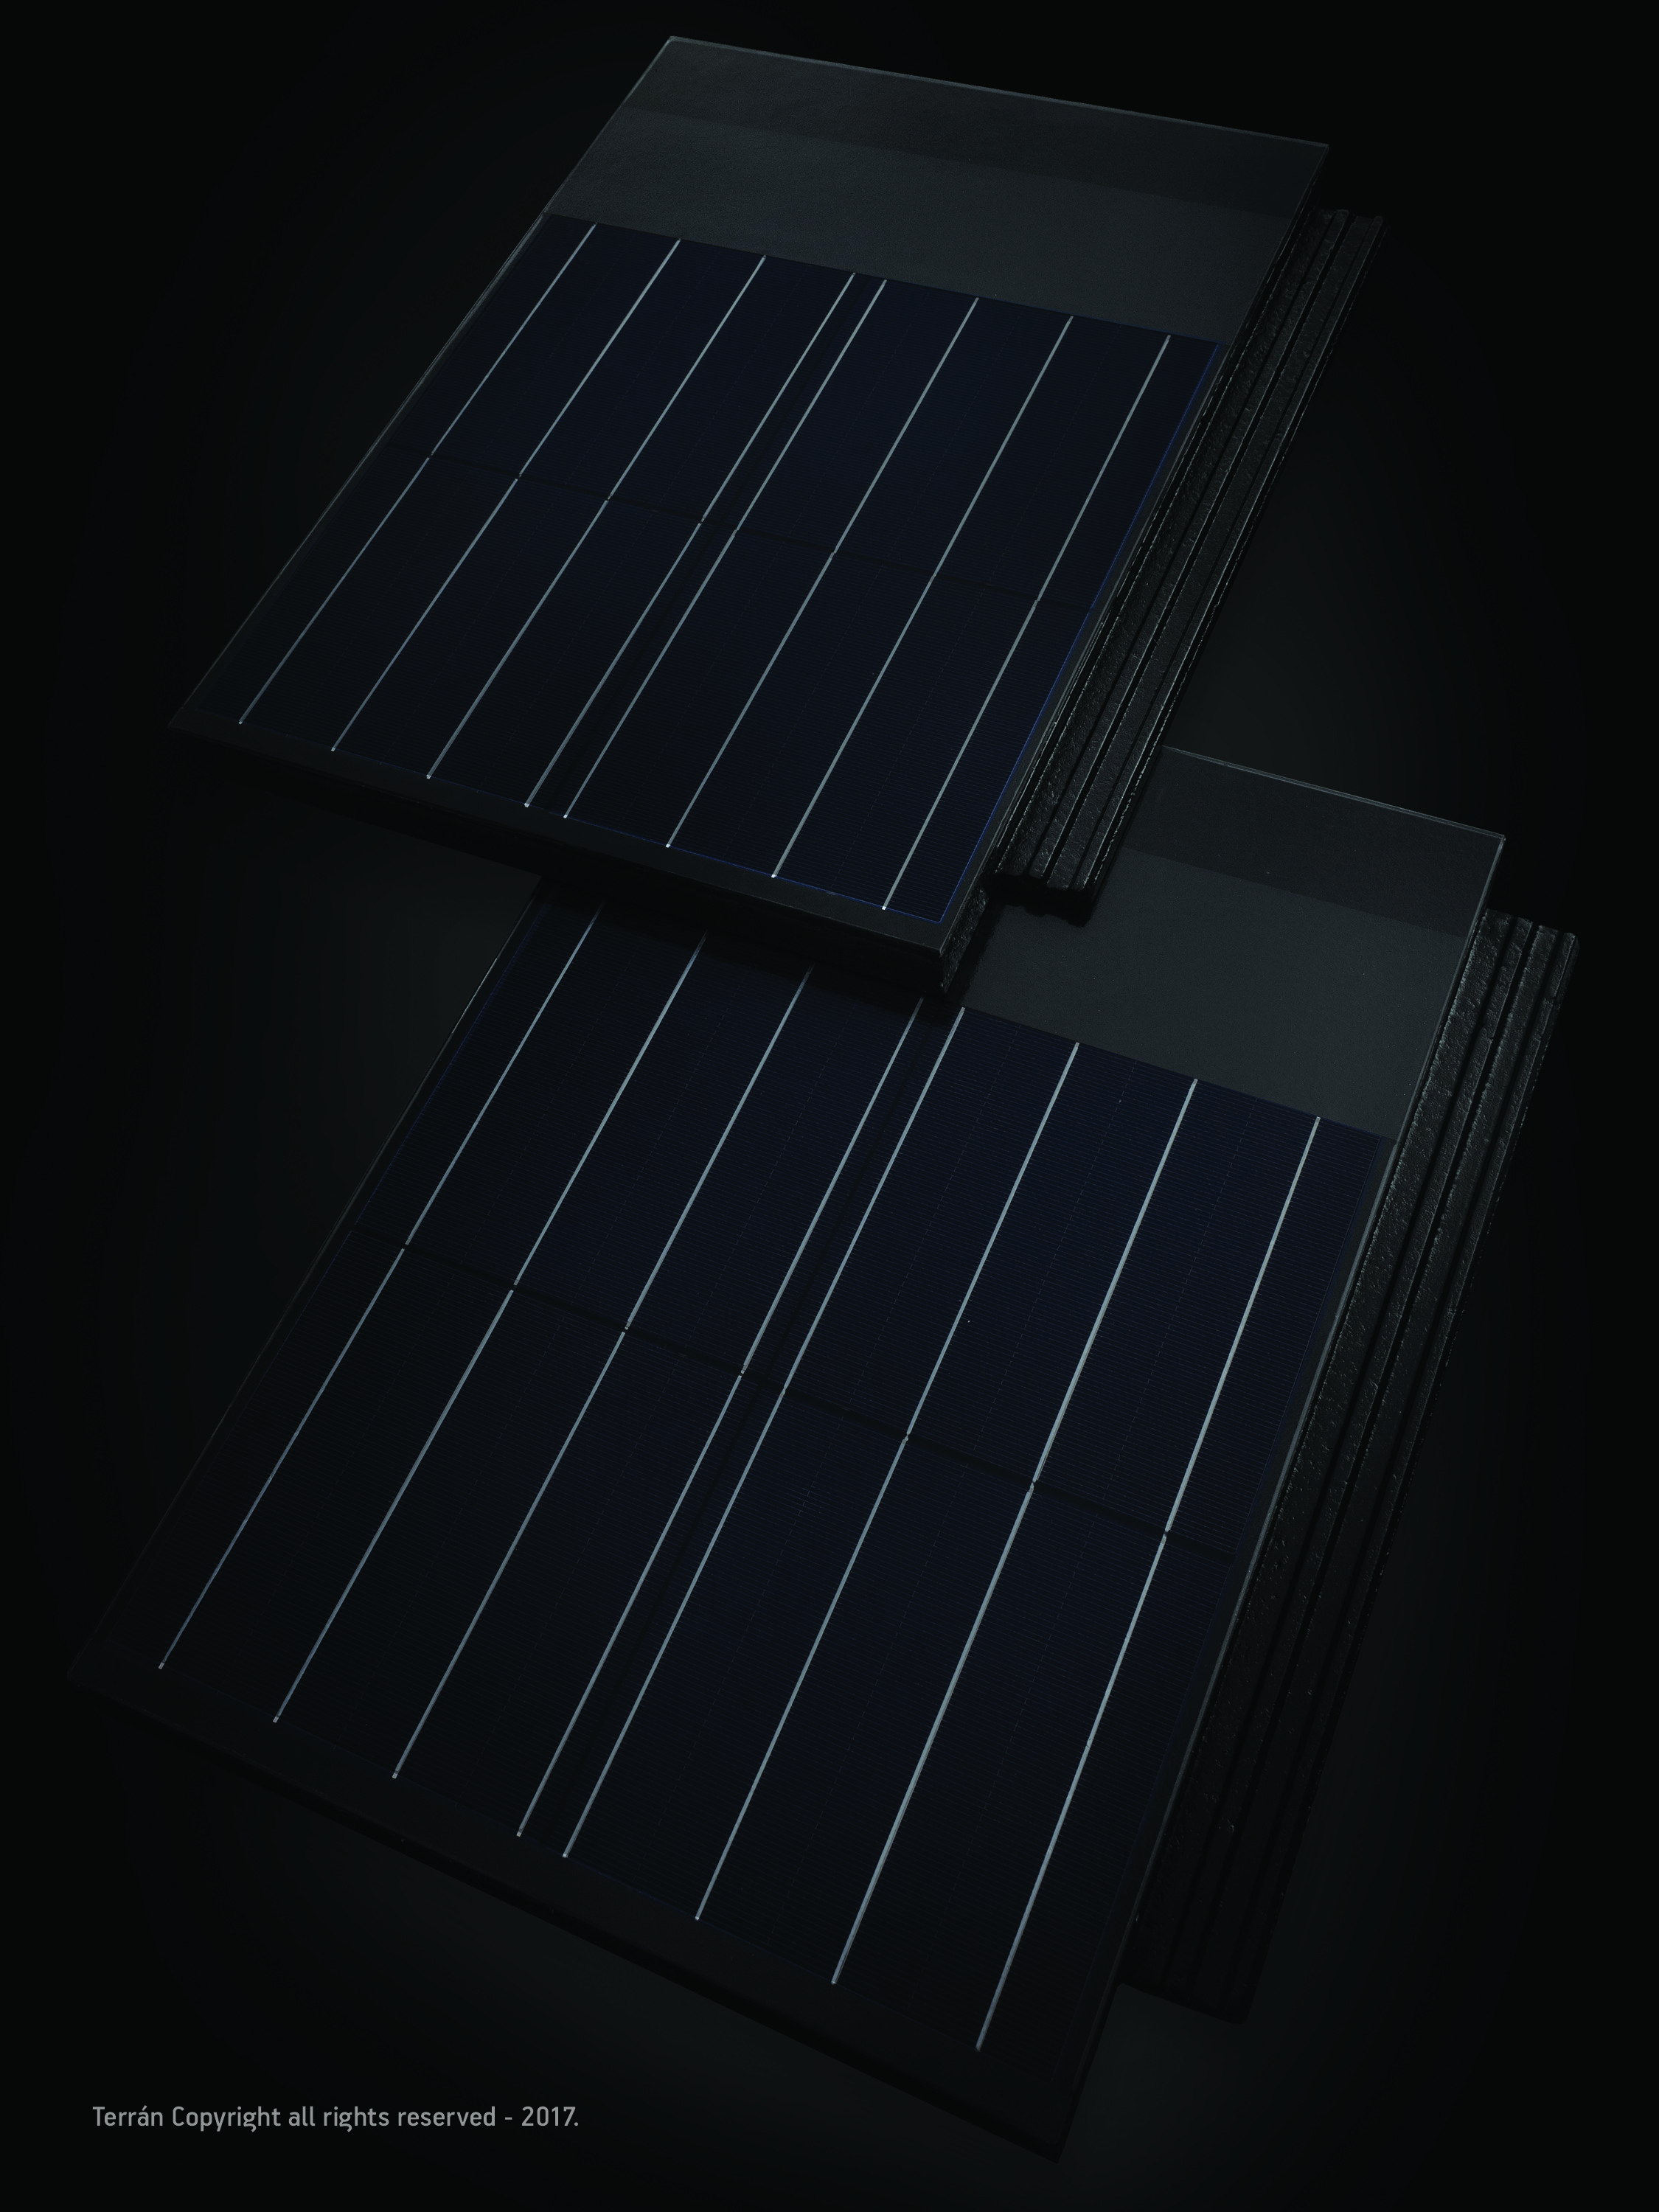 Elkezdte gyártani a napelemes tetőcserepeit aTerrán Tetőcserép Gyártó Kft.